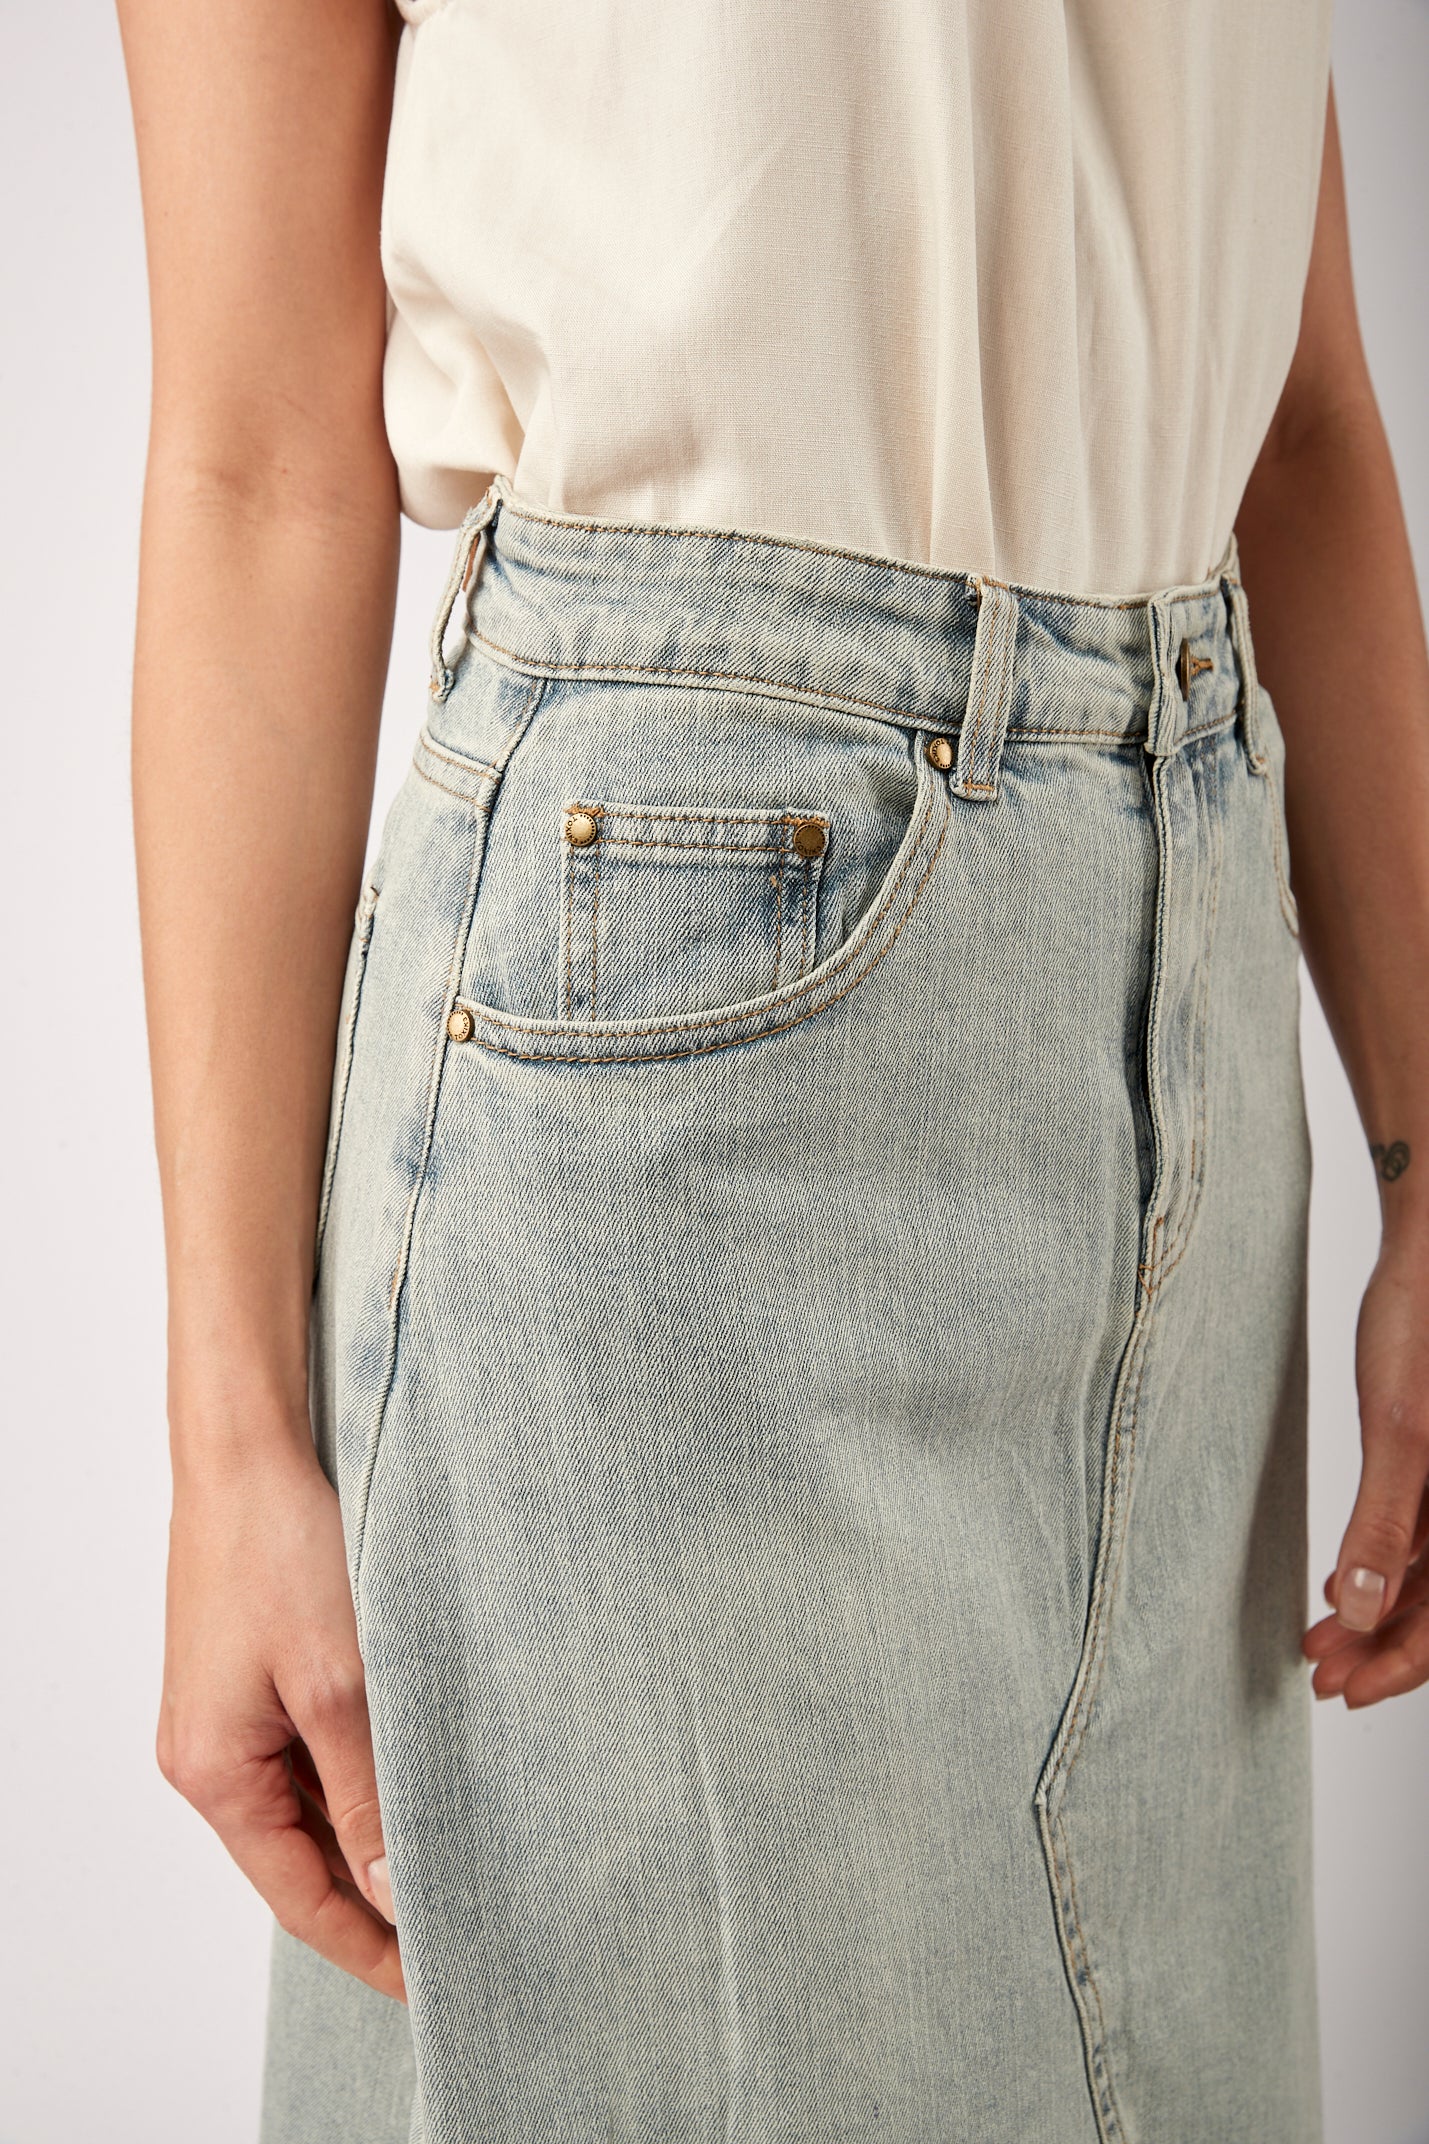 Jean split - Naty skirt